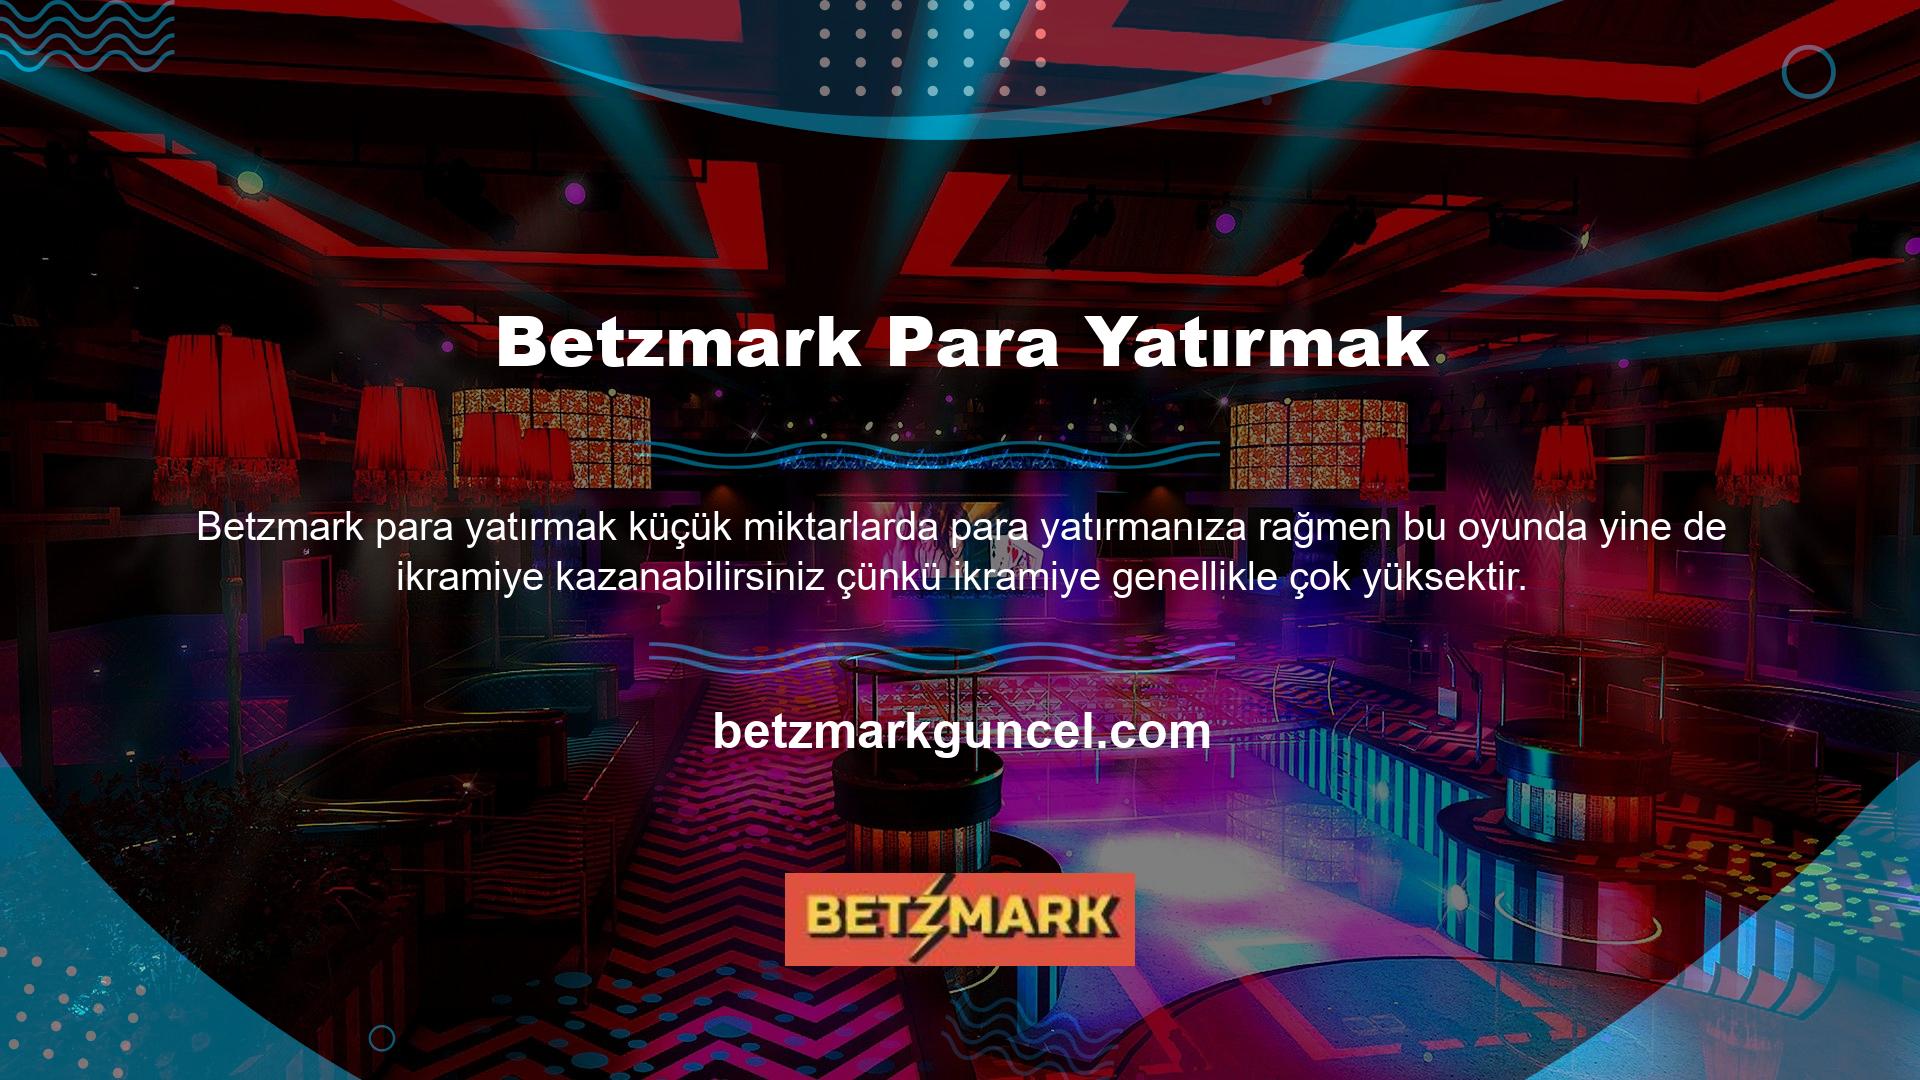 Betzmark, çevrimiçi hizmetler sunan bir web sitesidir